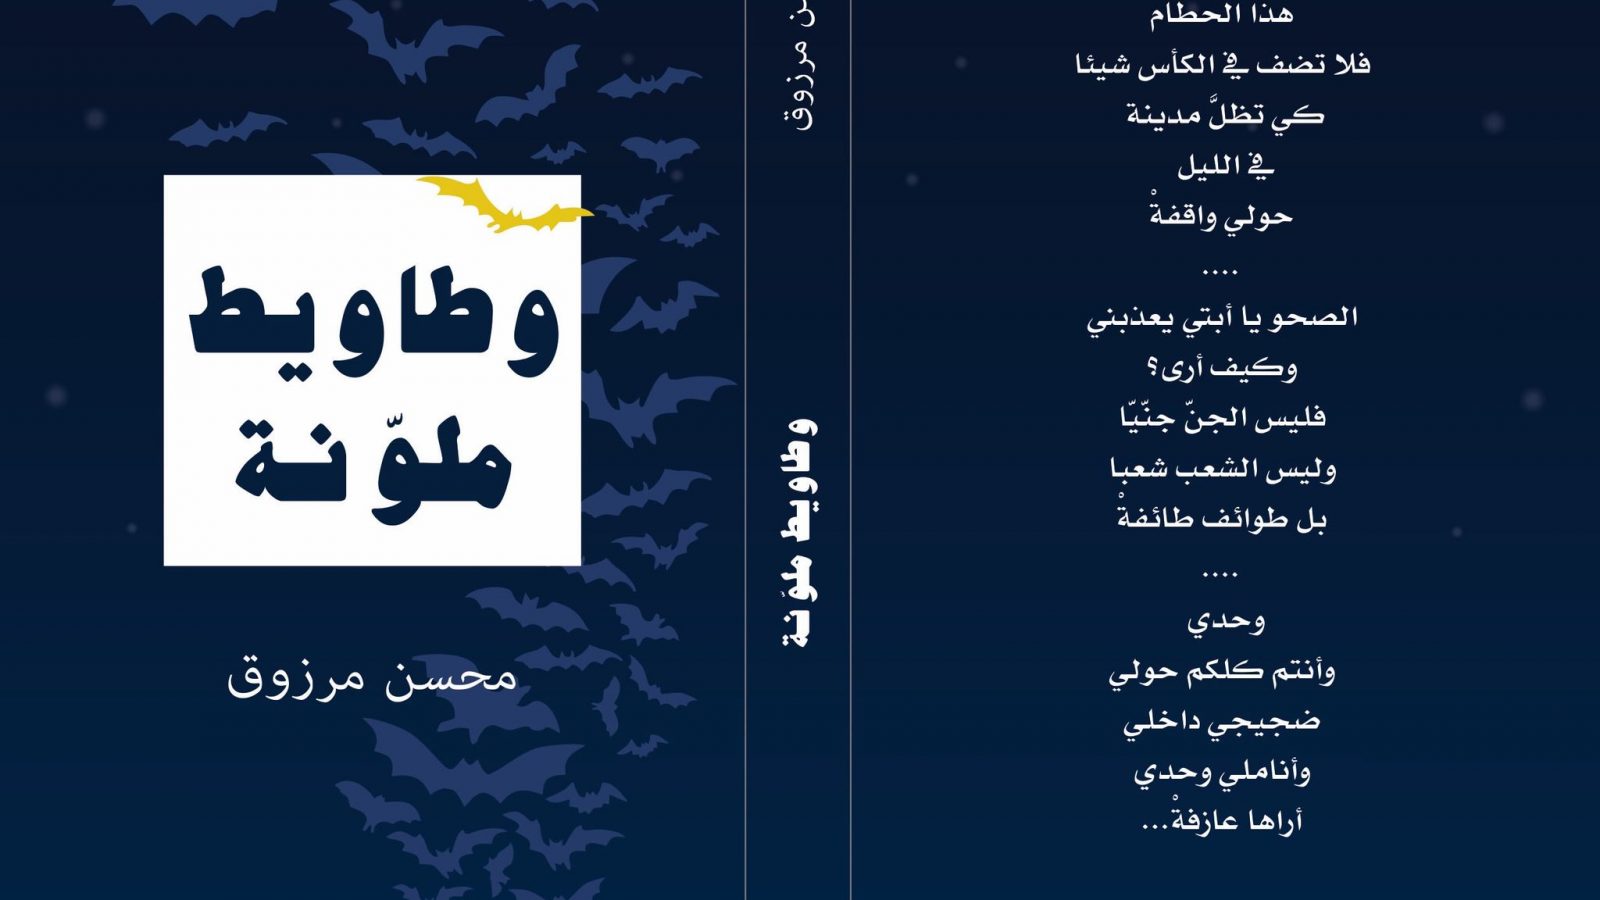 محسن مرزوق لـ”تونس الان”: بعد غلق جناح دار الكتاب مجموعتي الشعرية ستكون في هذه الأماكن